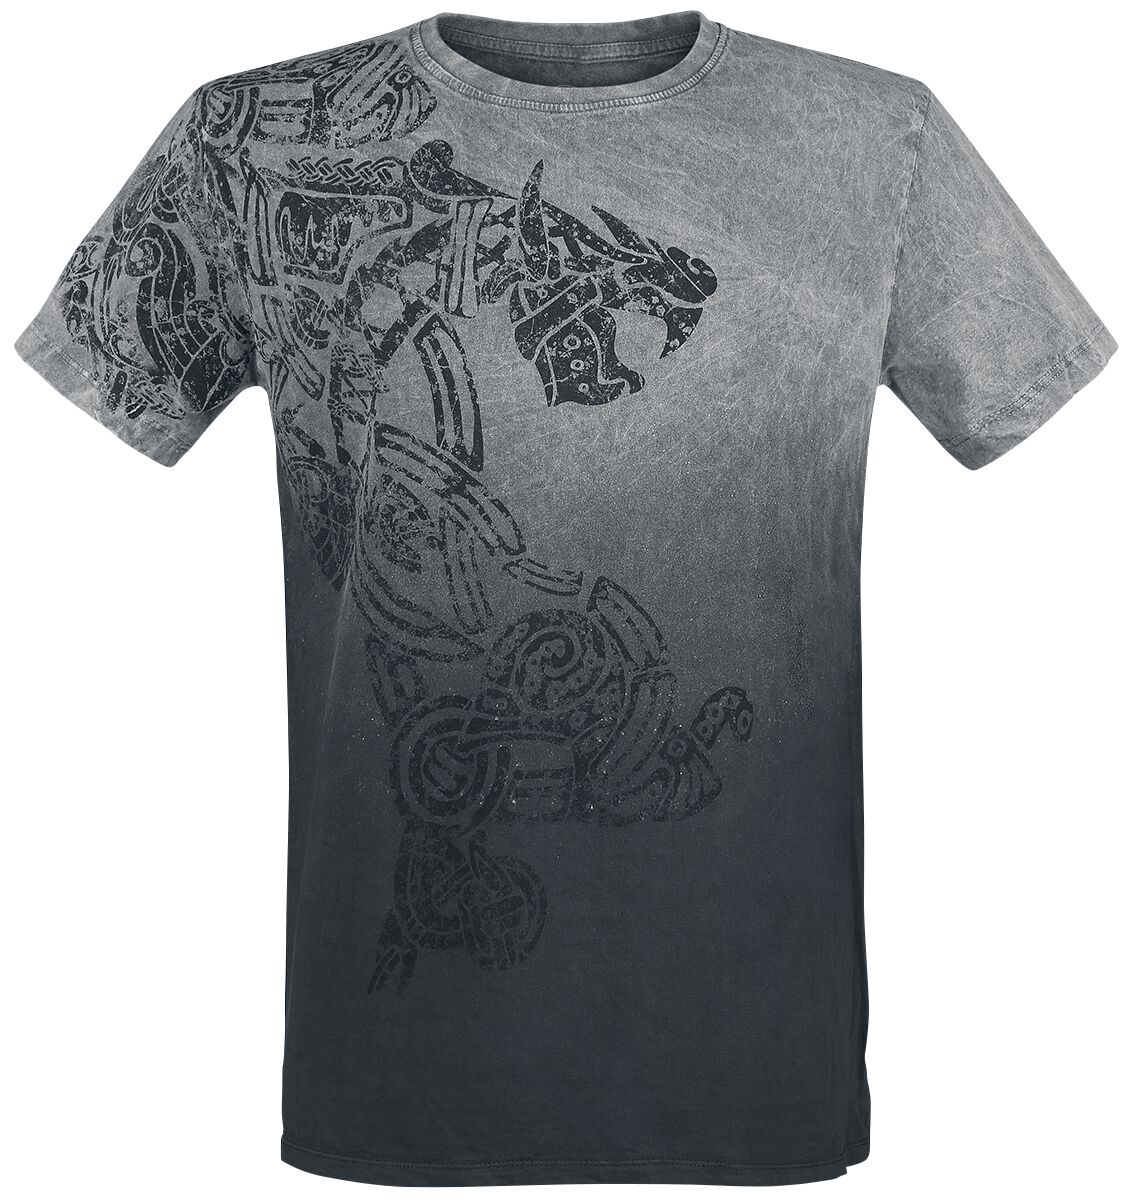 Outer Vision Dragon Tattoo T-Shirt grau in 4XL